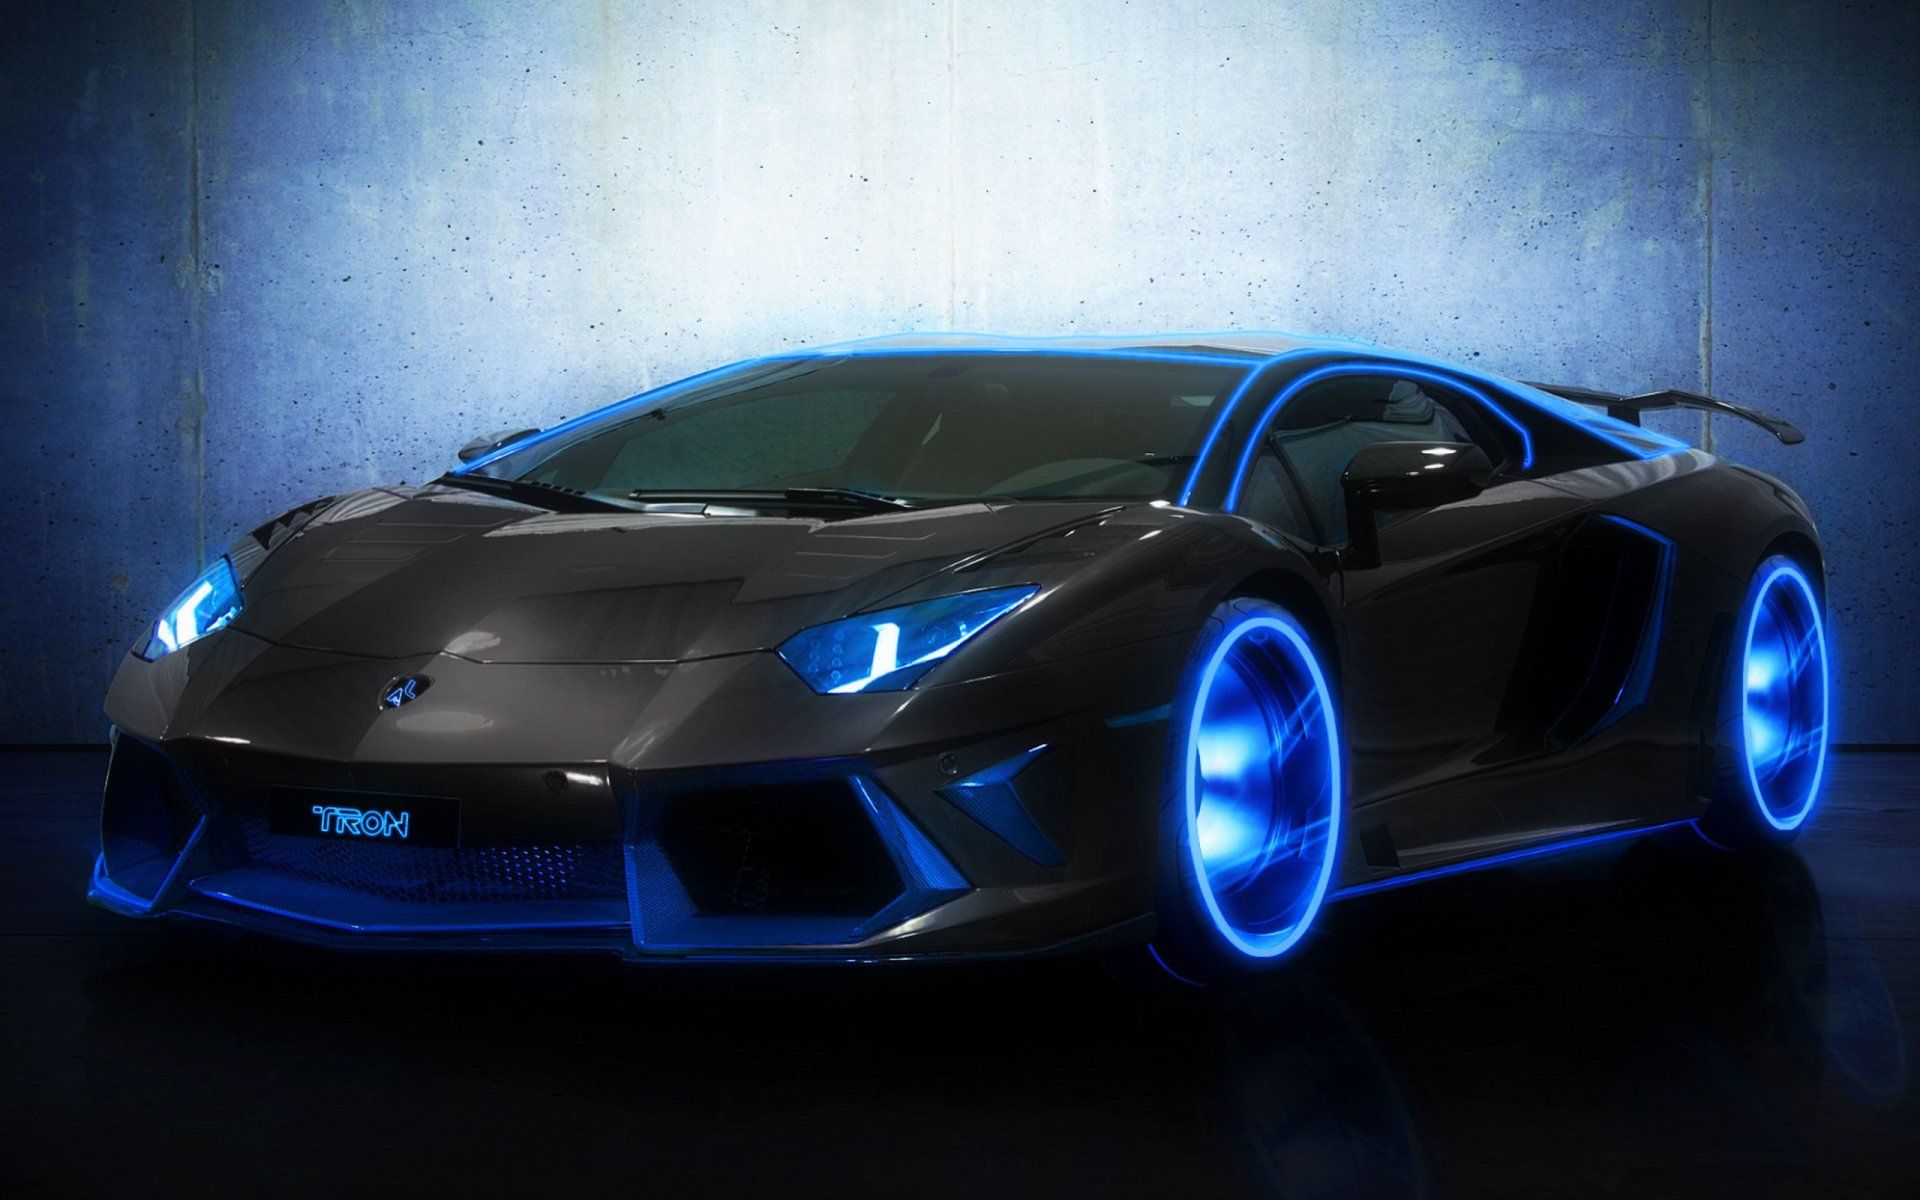 Lamborghini - Xe hơi Lamborghini luôn là sự lựa chọn hàng đầu của những người yêu xe tốc độ. Xem hình ảnh về chiếc siêu xe này để thấy một thiết kế đầy ấn tượng và hiệu suất vượt trội.